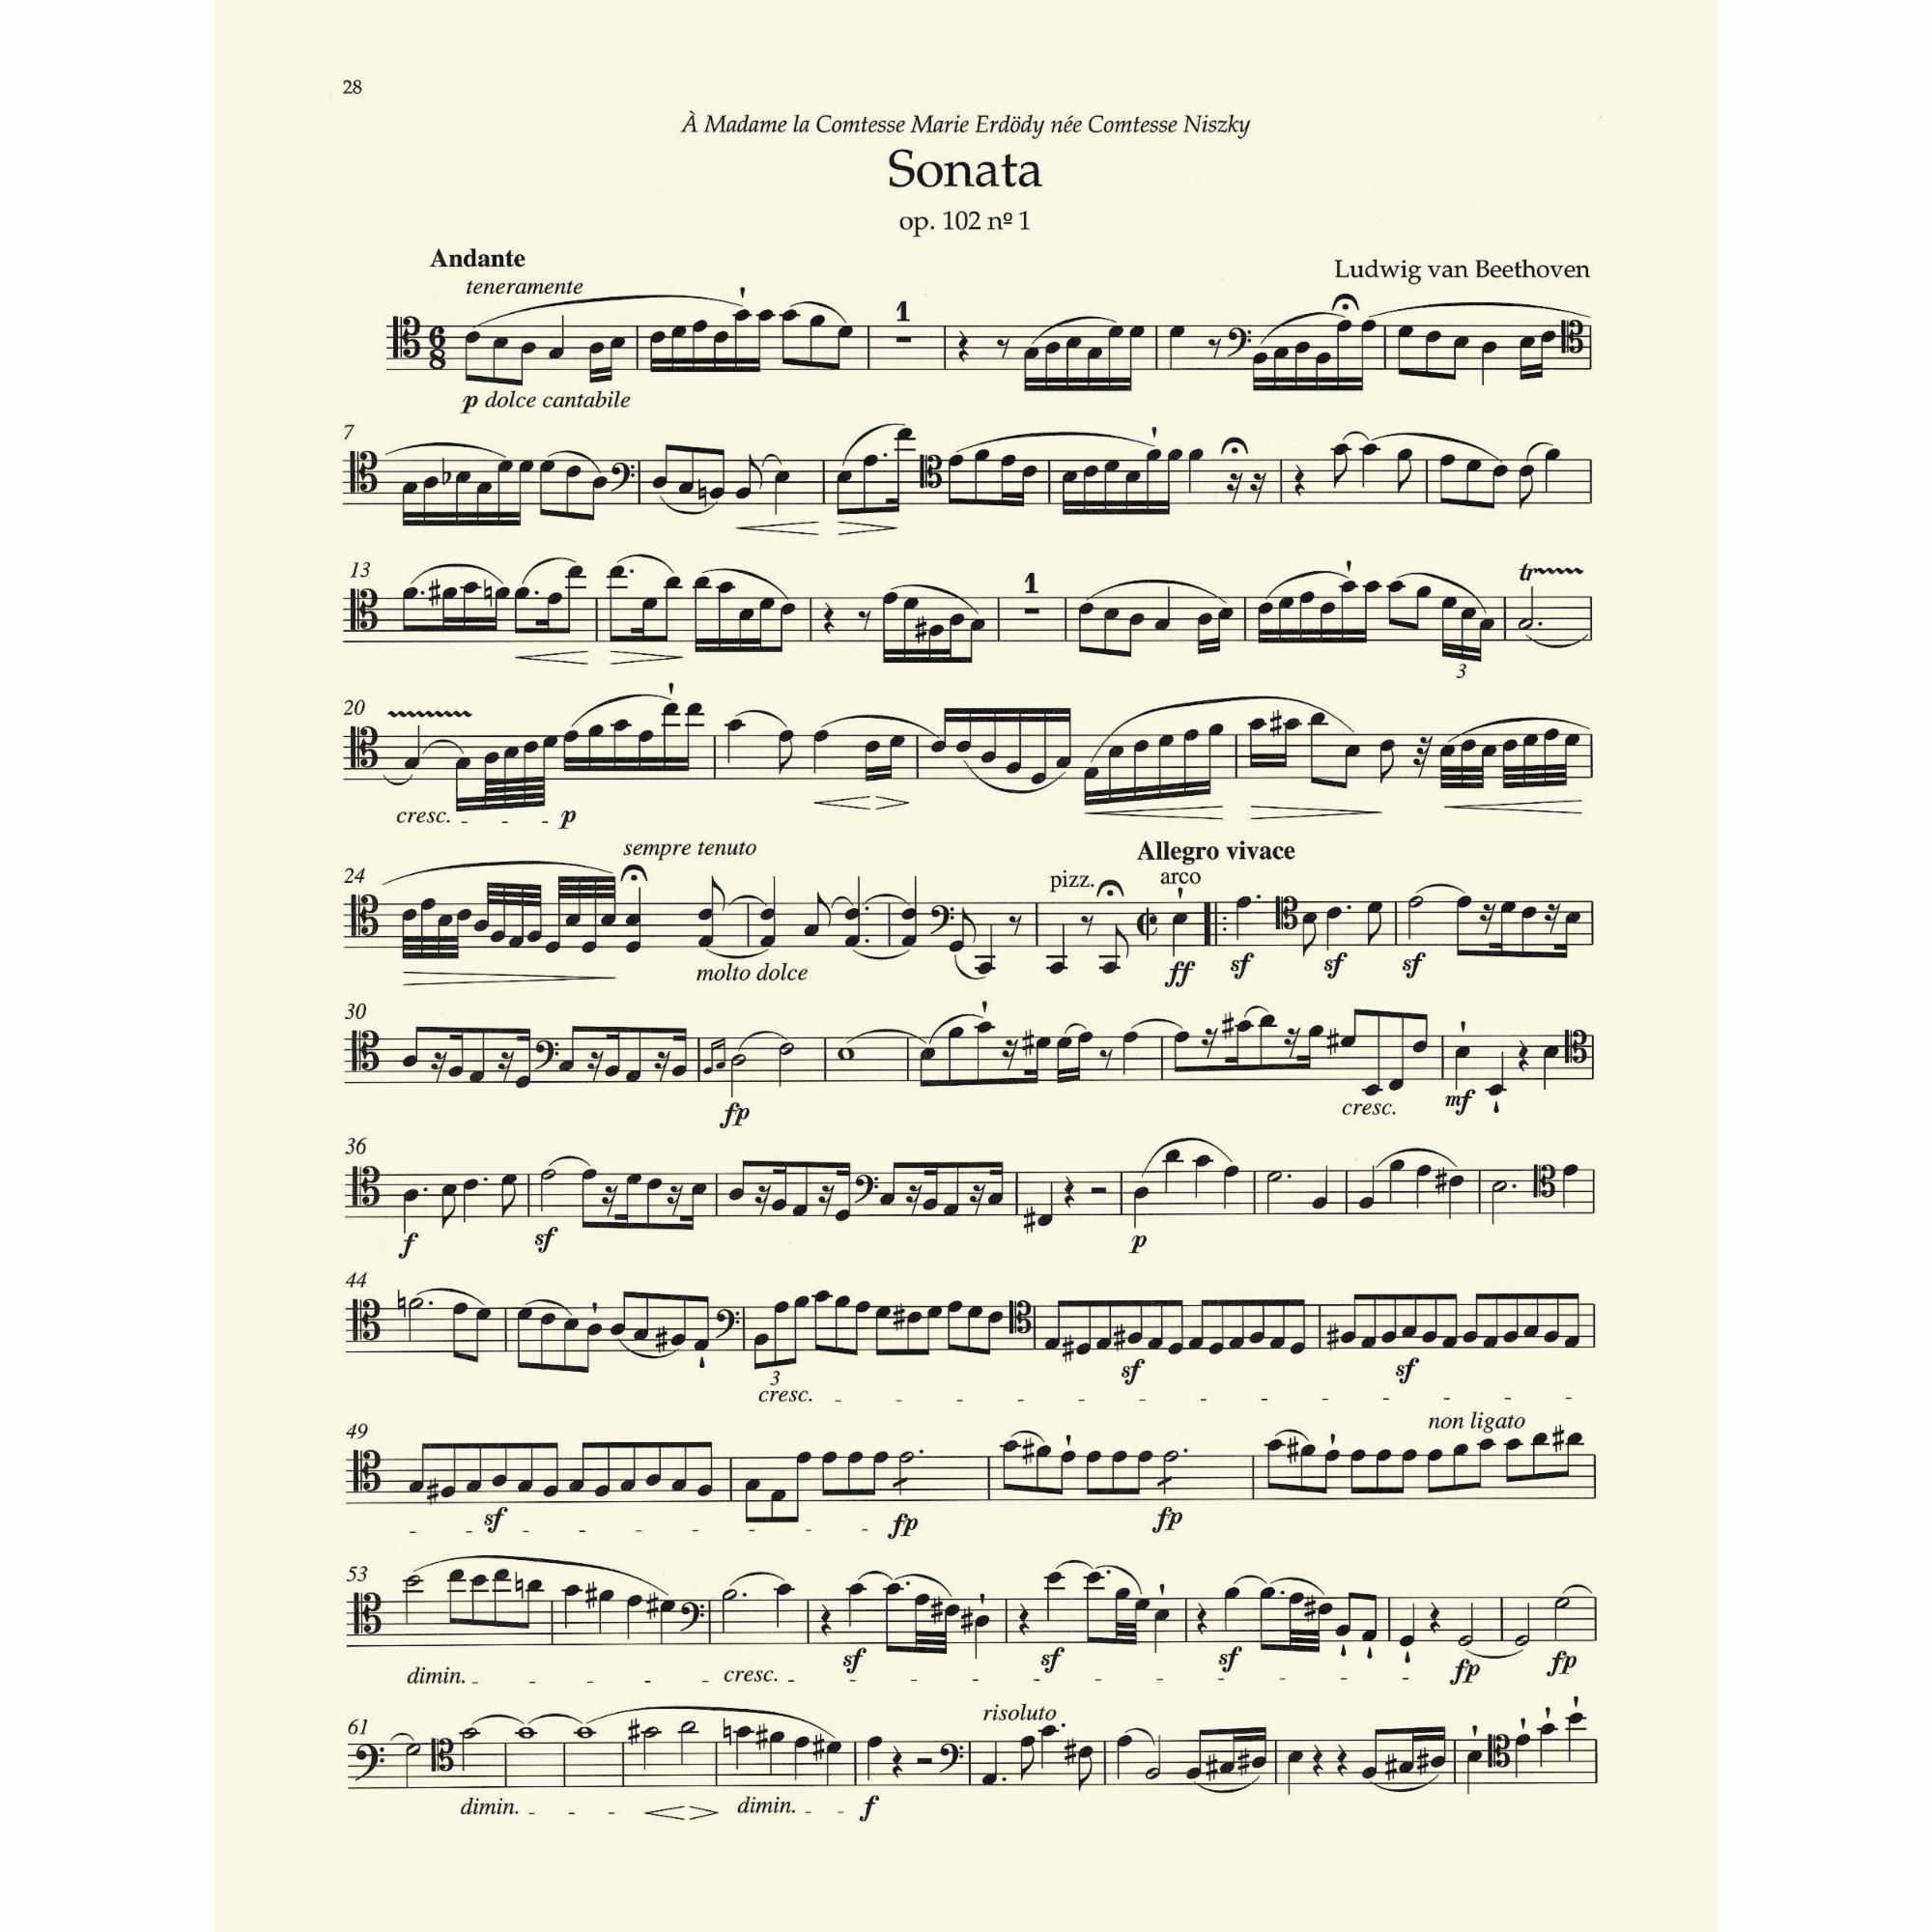 Sample: Cello (Pg. 28)